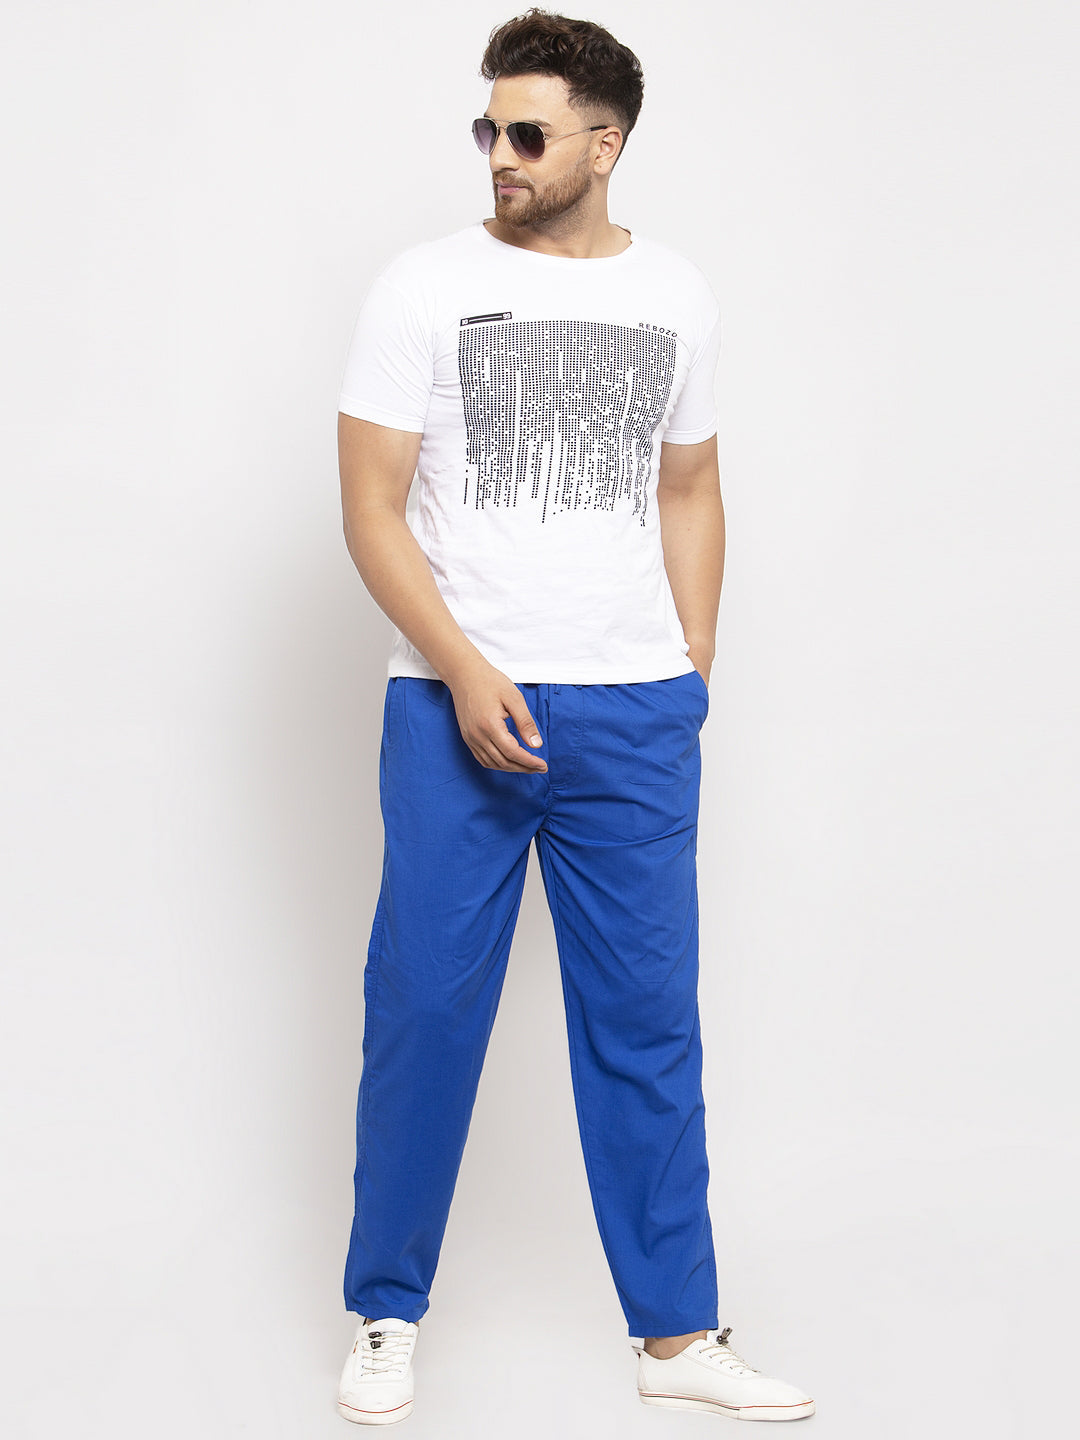 Jainish Men's Blue Solid Cotton Track Pants ( JOG 011Royal-Blue ) - Distacart